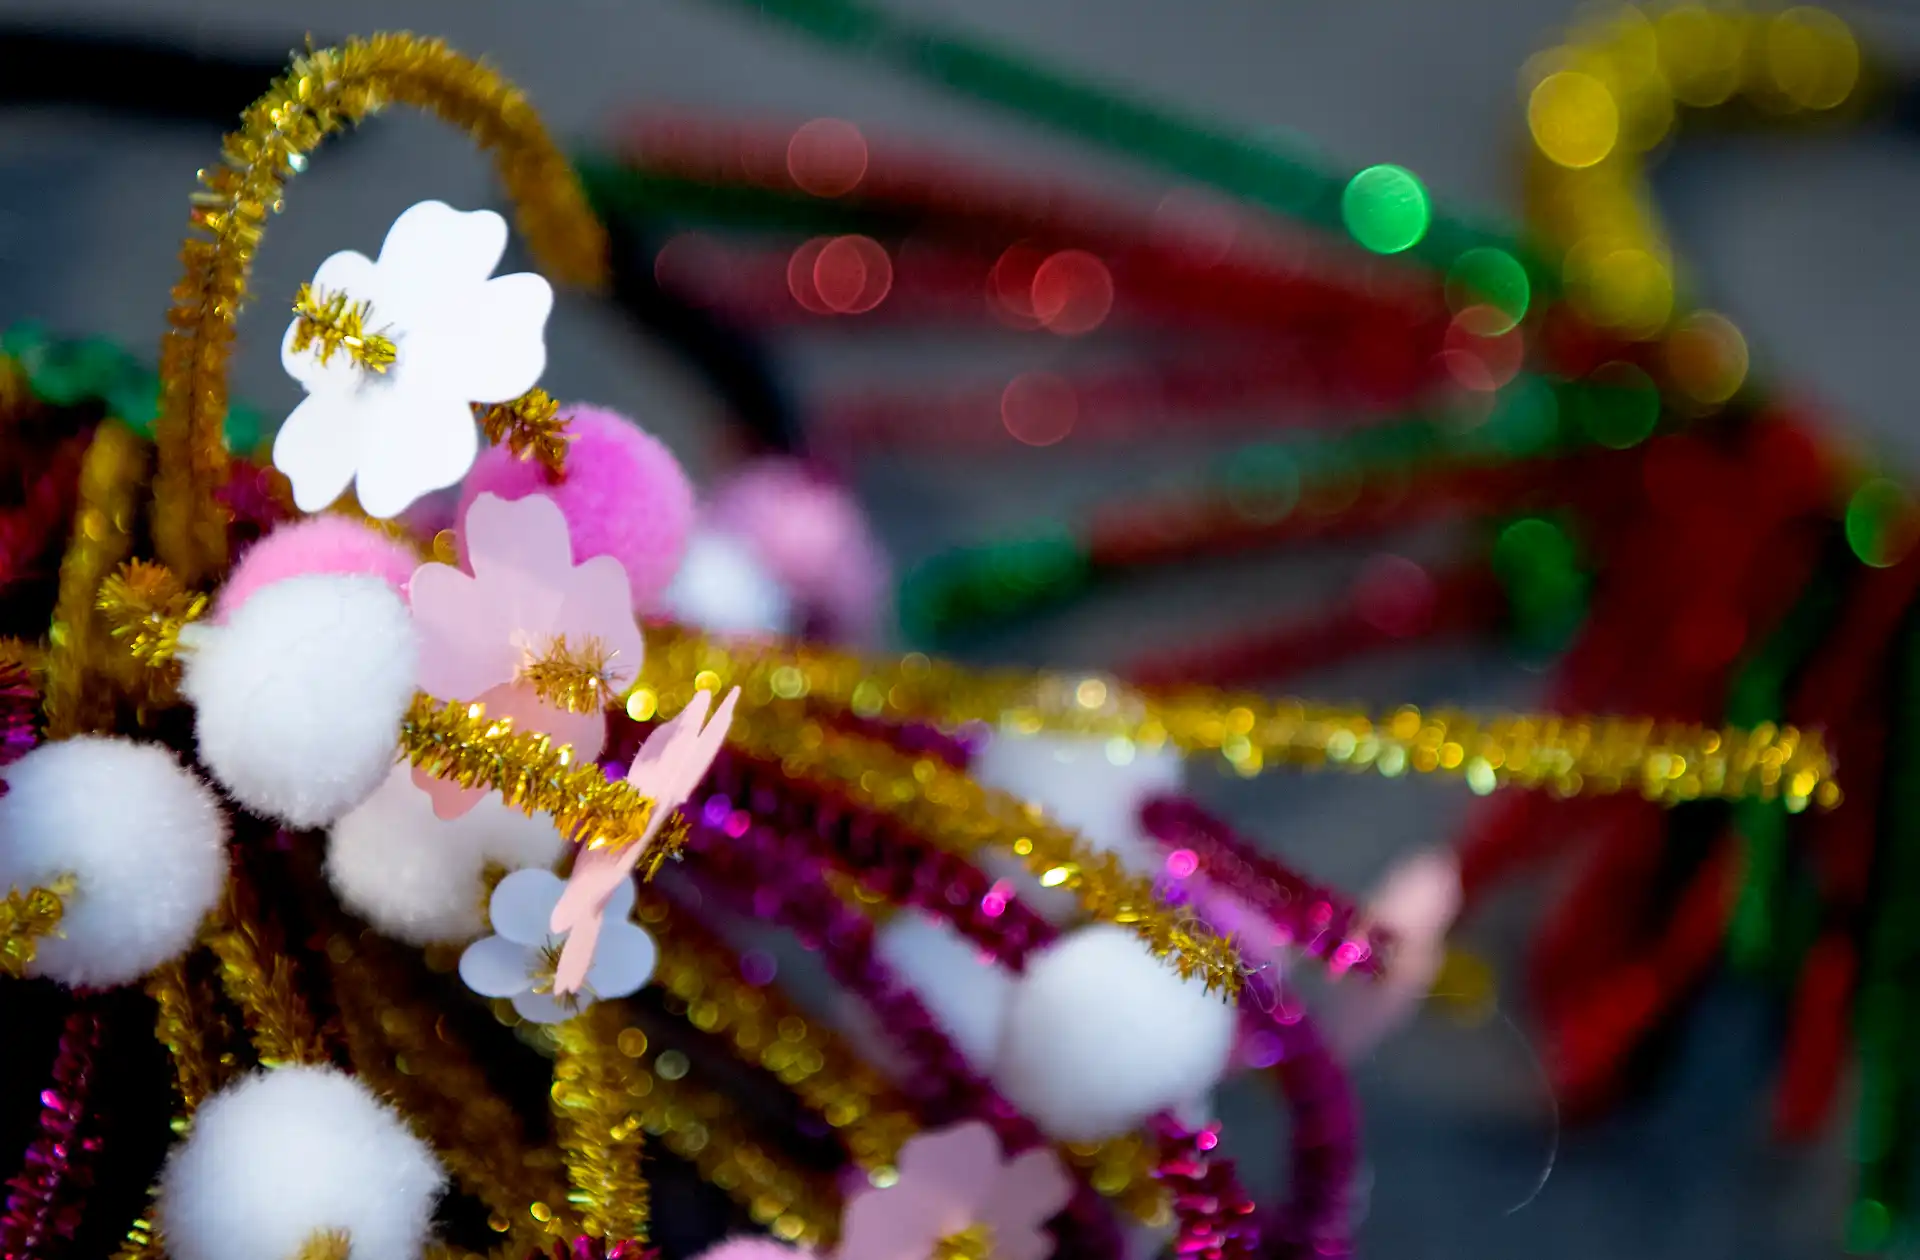 Foto på glittriga piprensare i olika färger. På piprensarna sitter vita pompom-bollar och blommor i papp. 